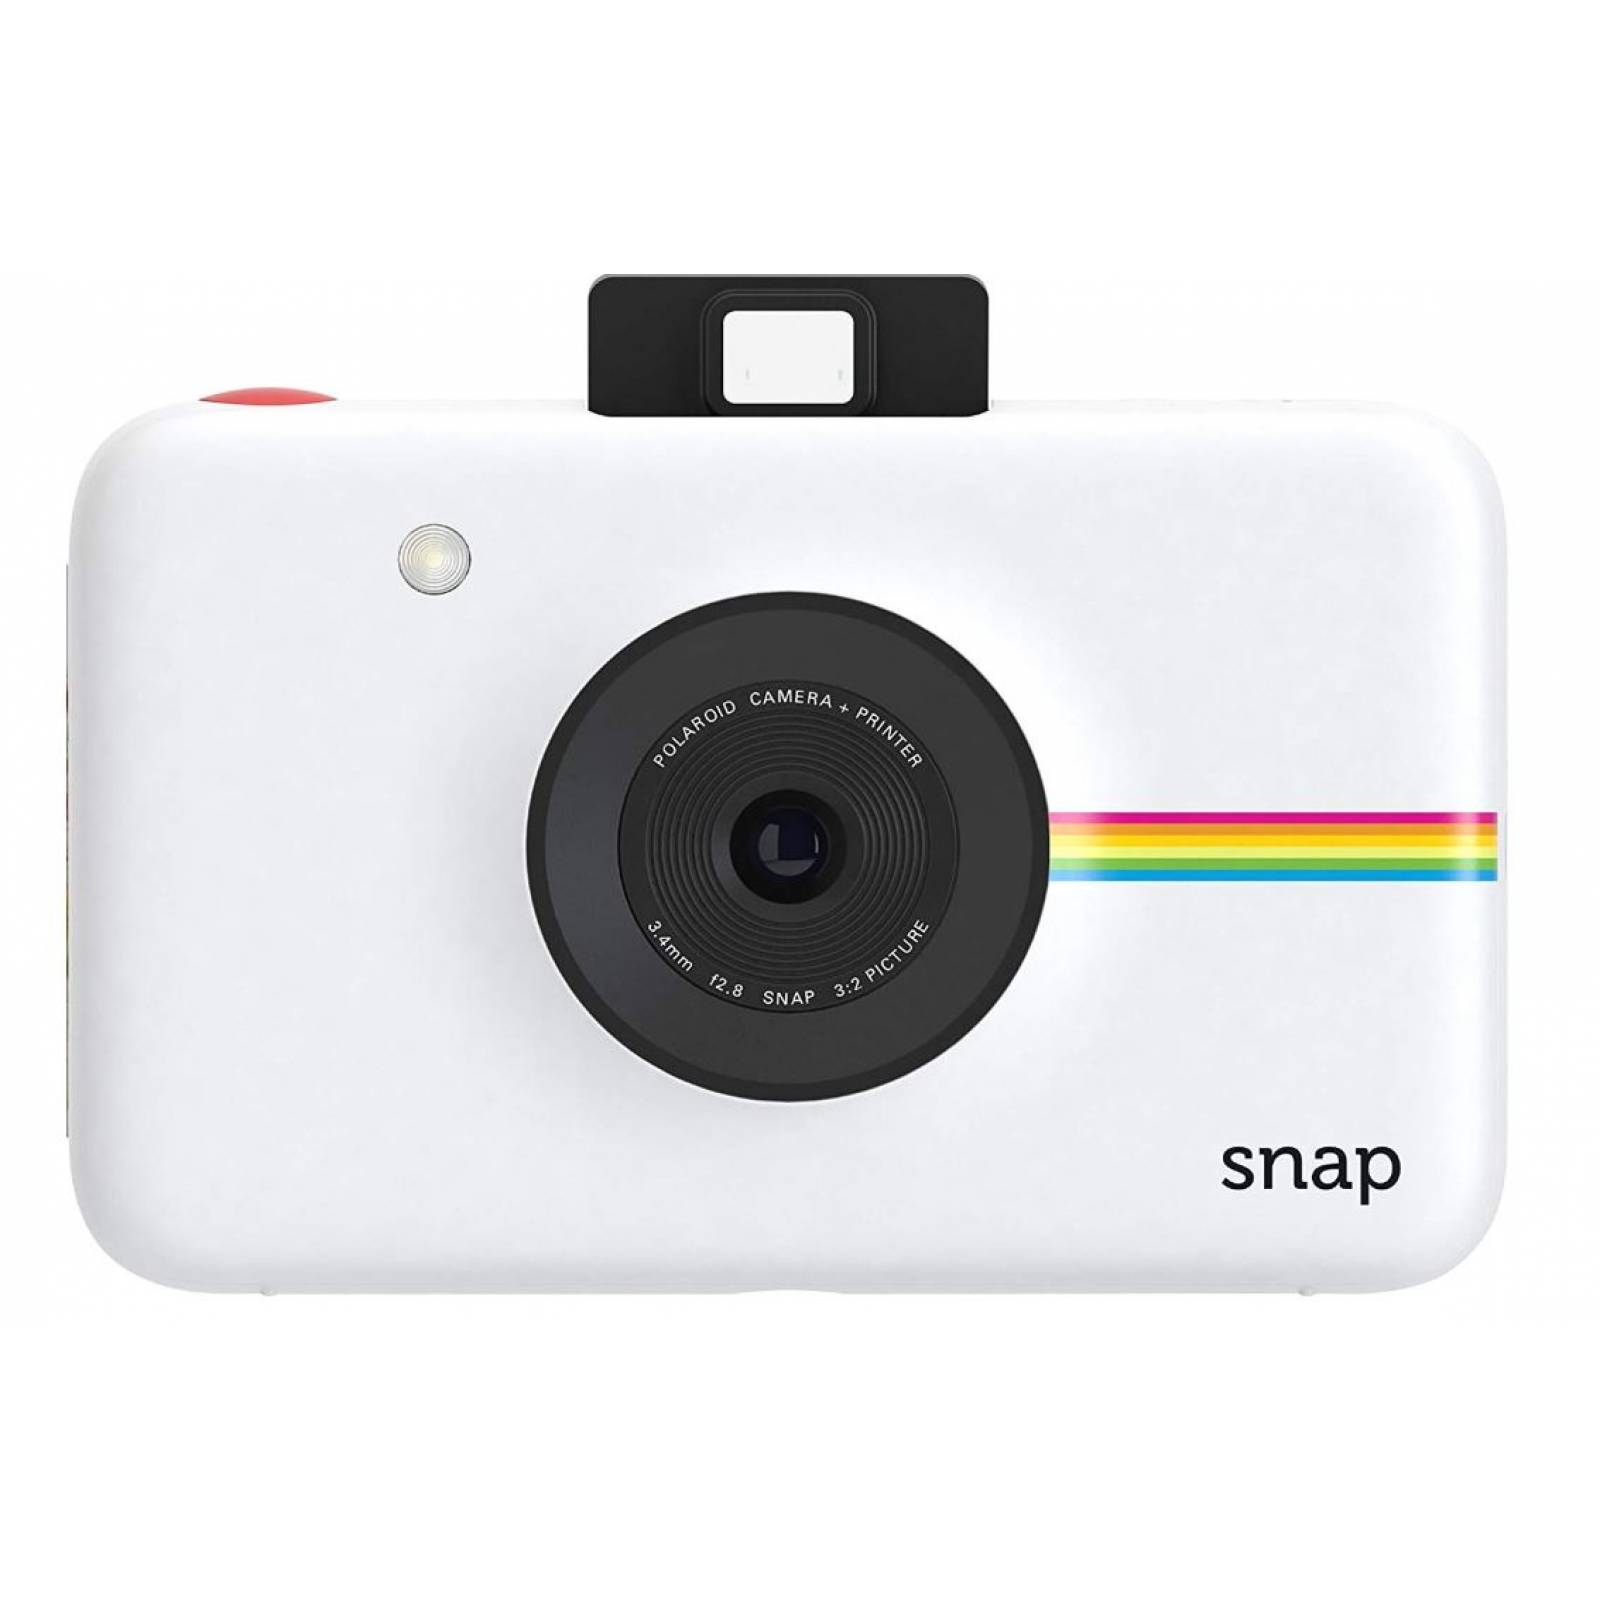 Snap camara digital instant print Disponible colores: Negro, Blanco, Rojo y Azul